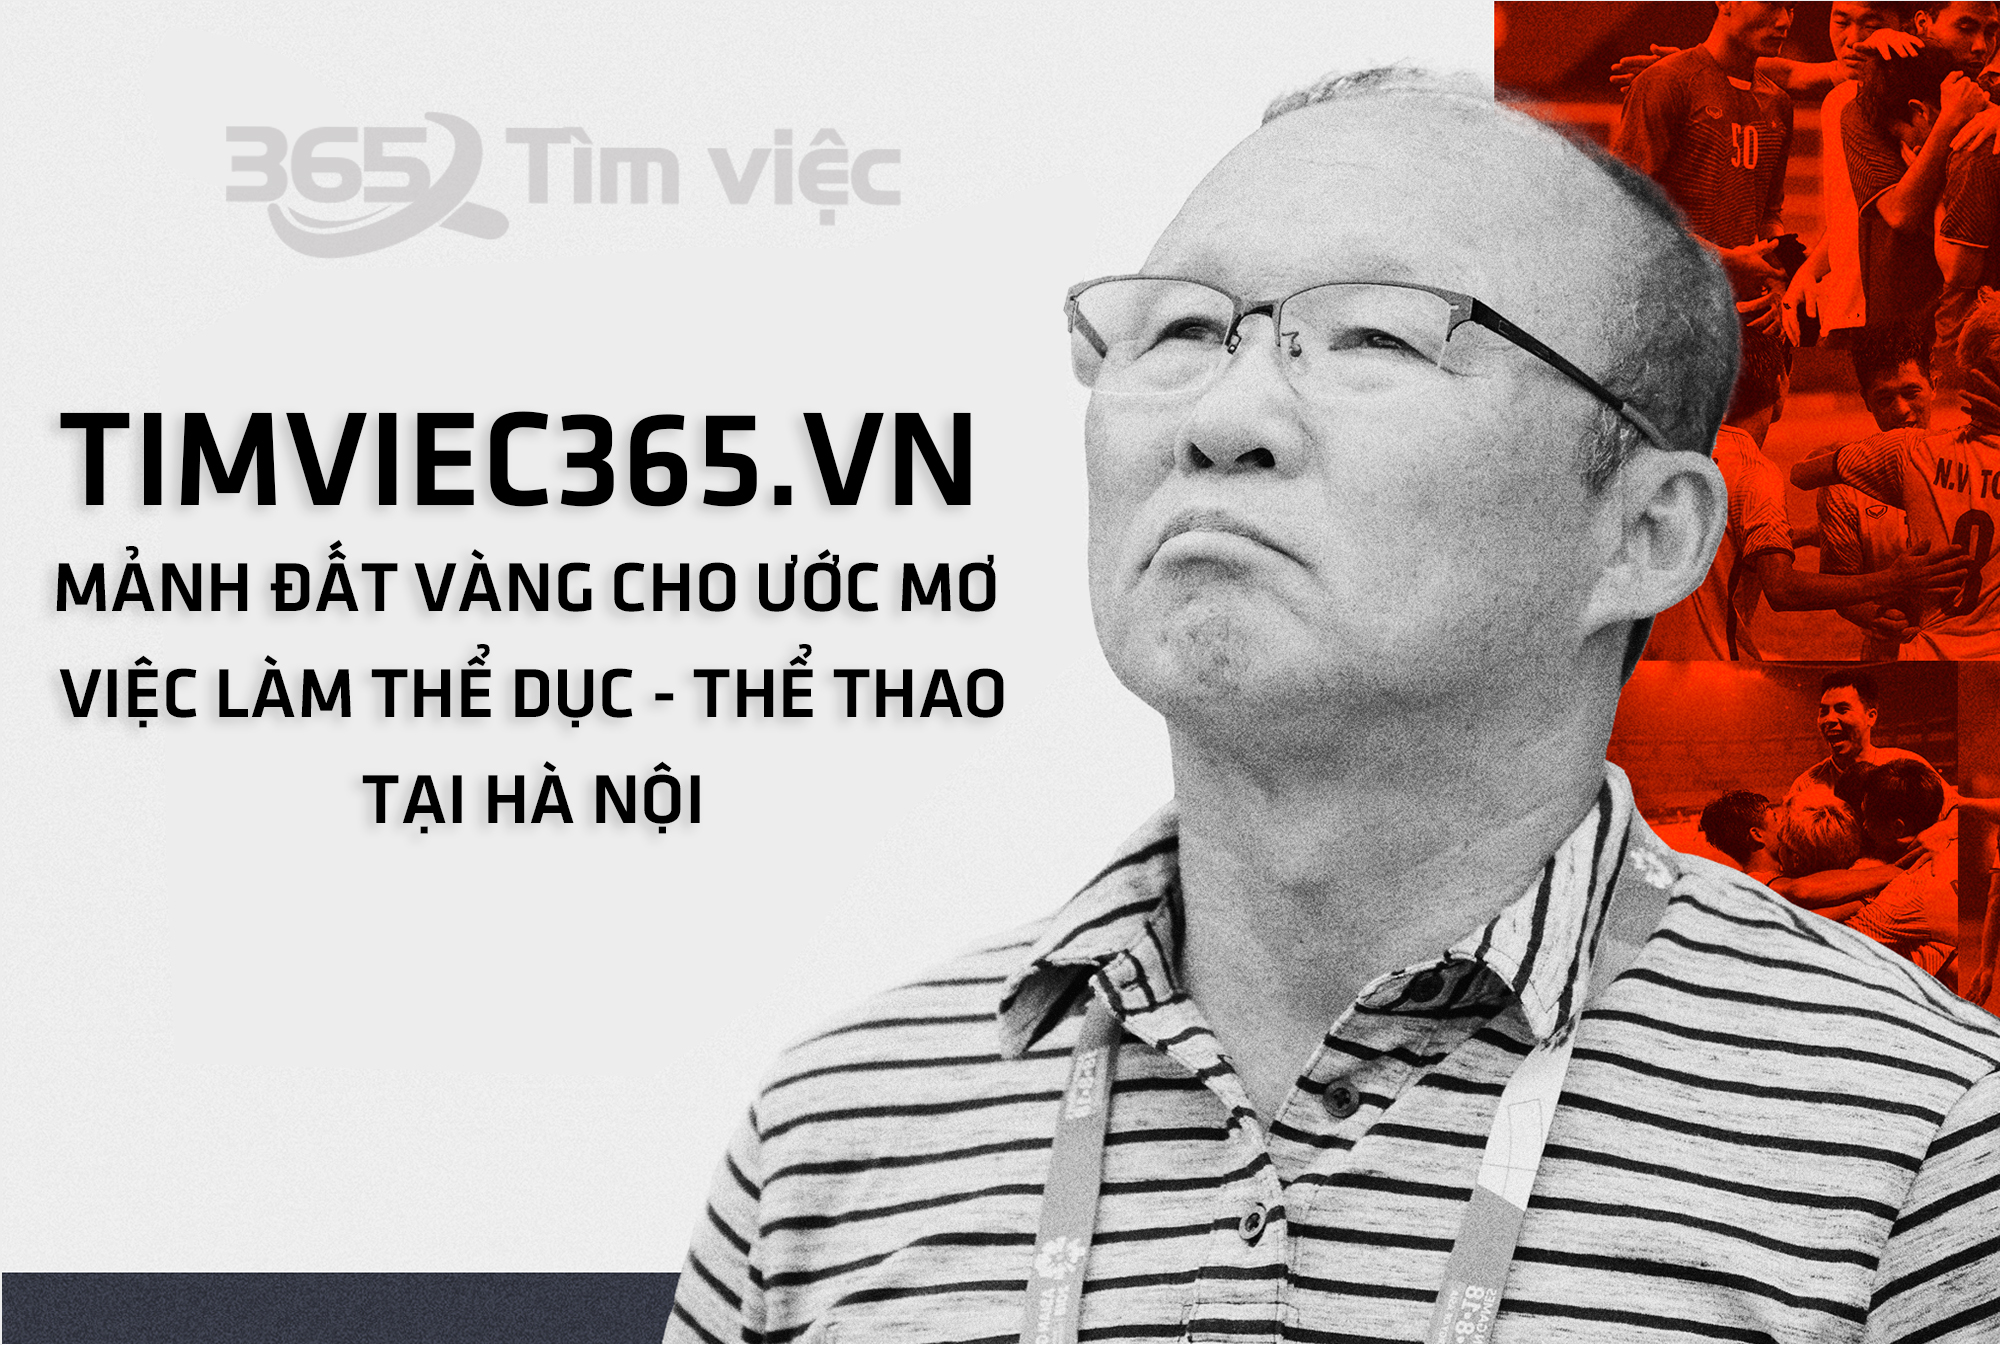  Timviec365.vn mảnh đất vàng cho ước mơ việc làm Thể dục - Thể thao tại Hà Nội